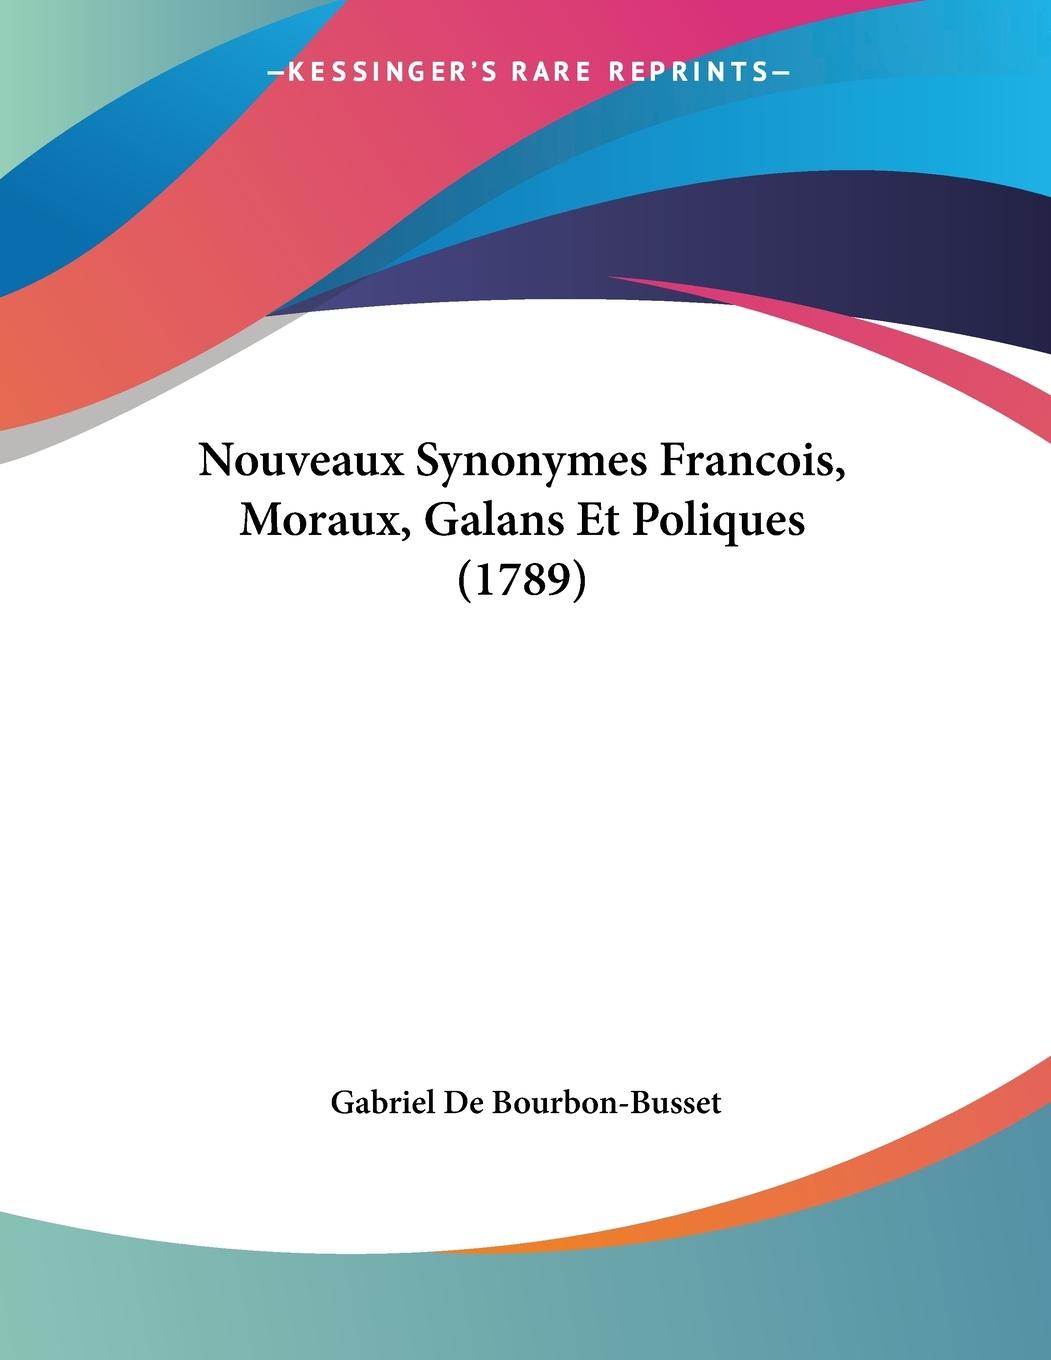 Nouveaux Synonymes Francois, Moraux, Galans Et Poliques (1789) - De Bourbon-Busset, Gabriel